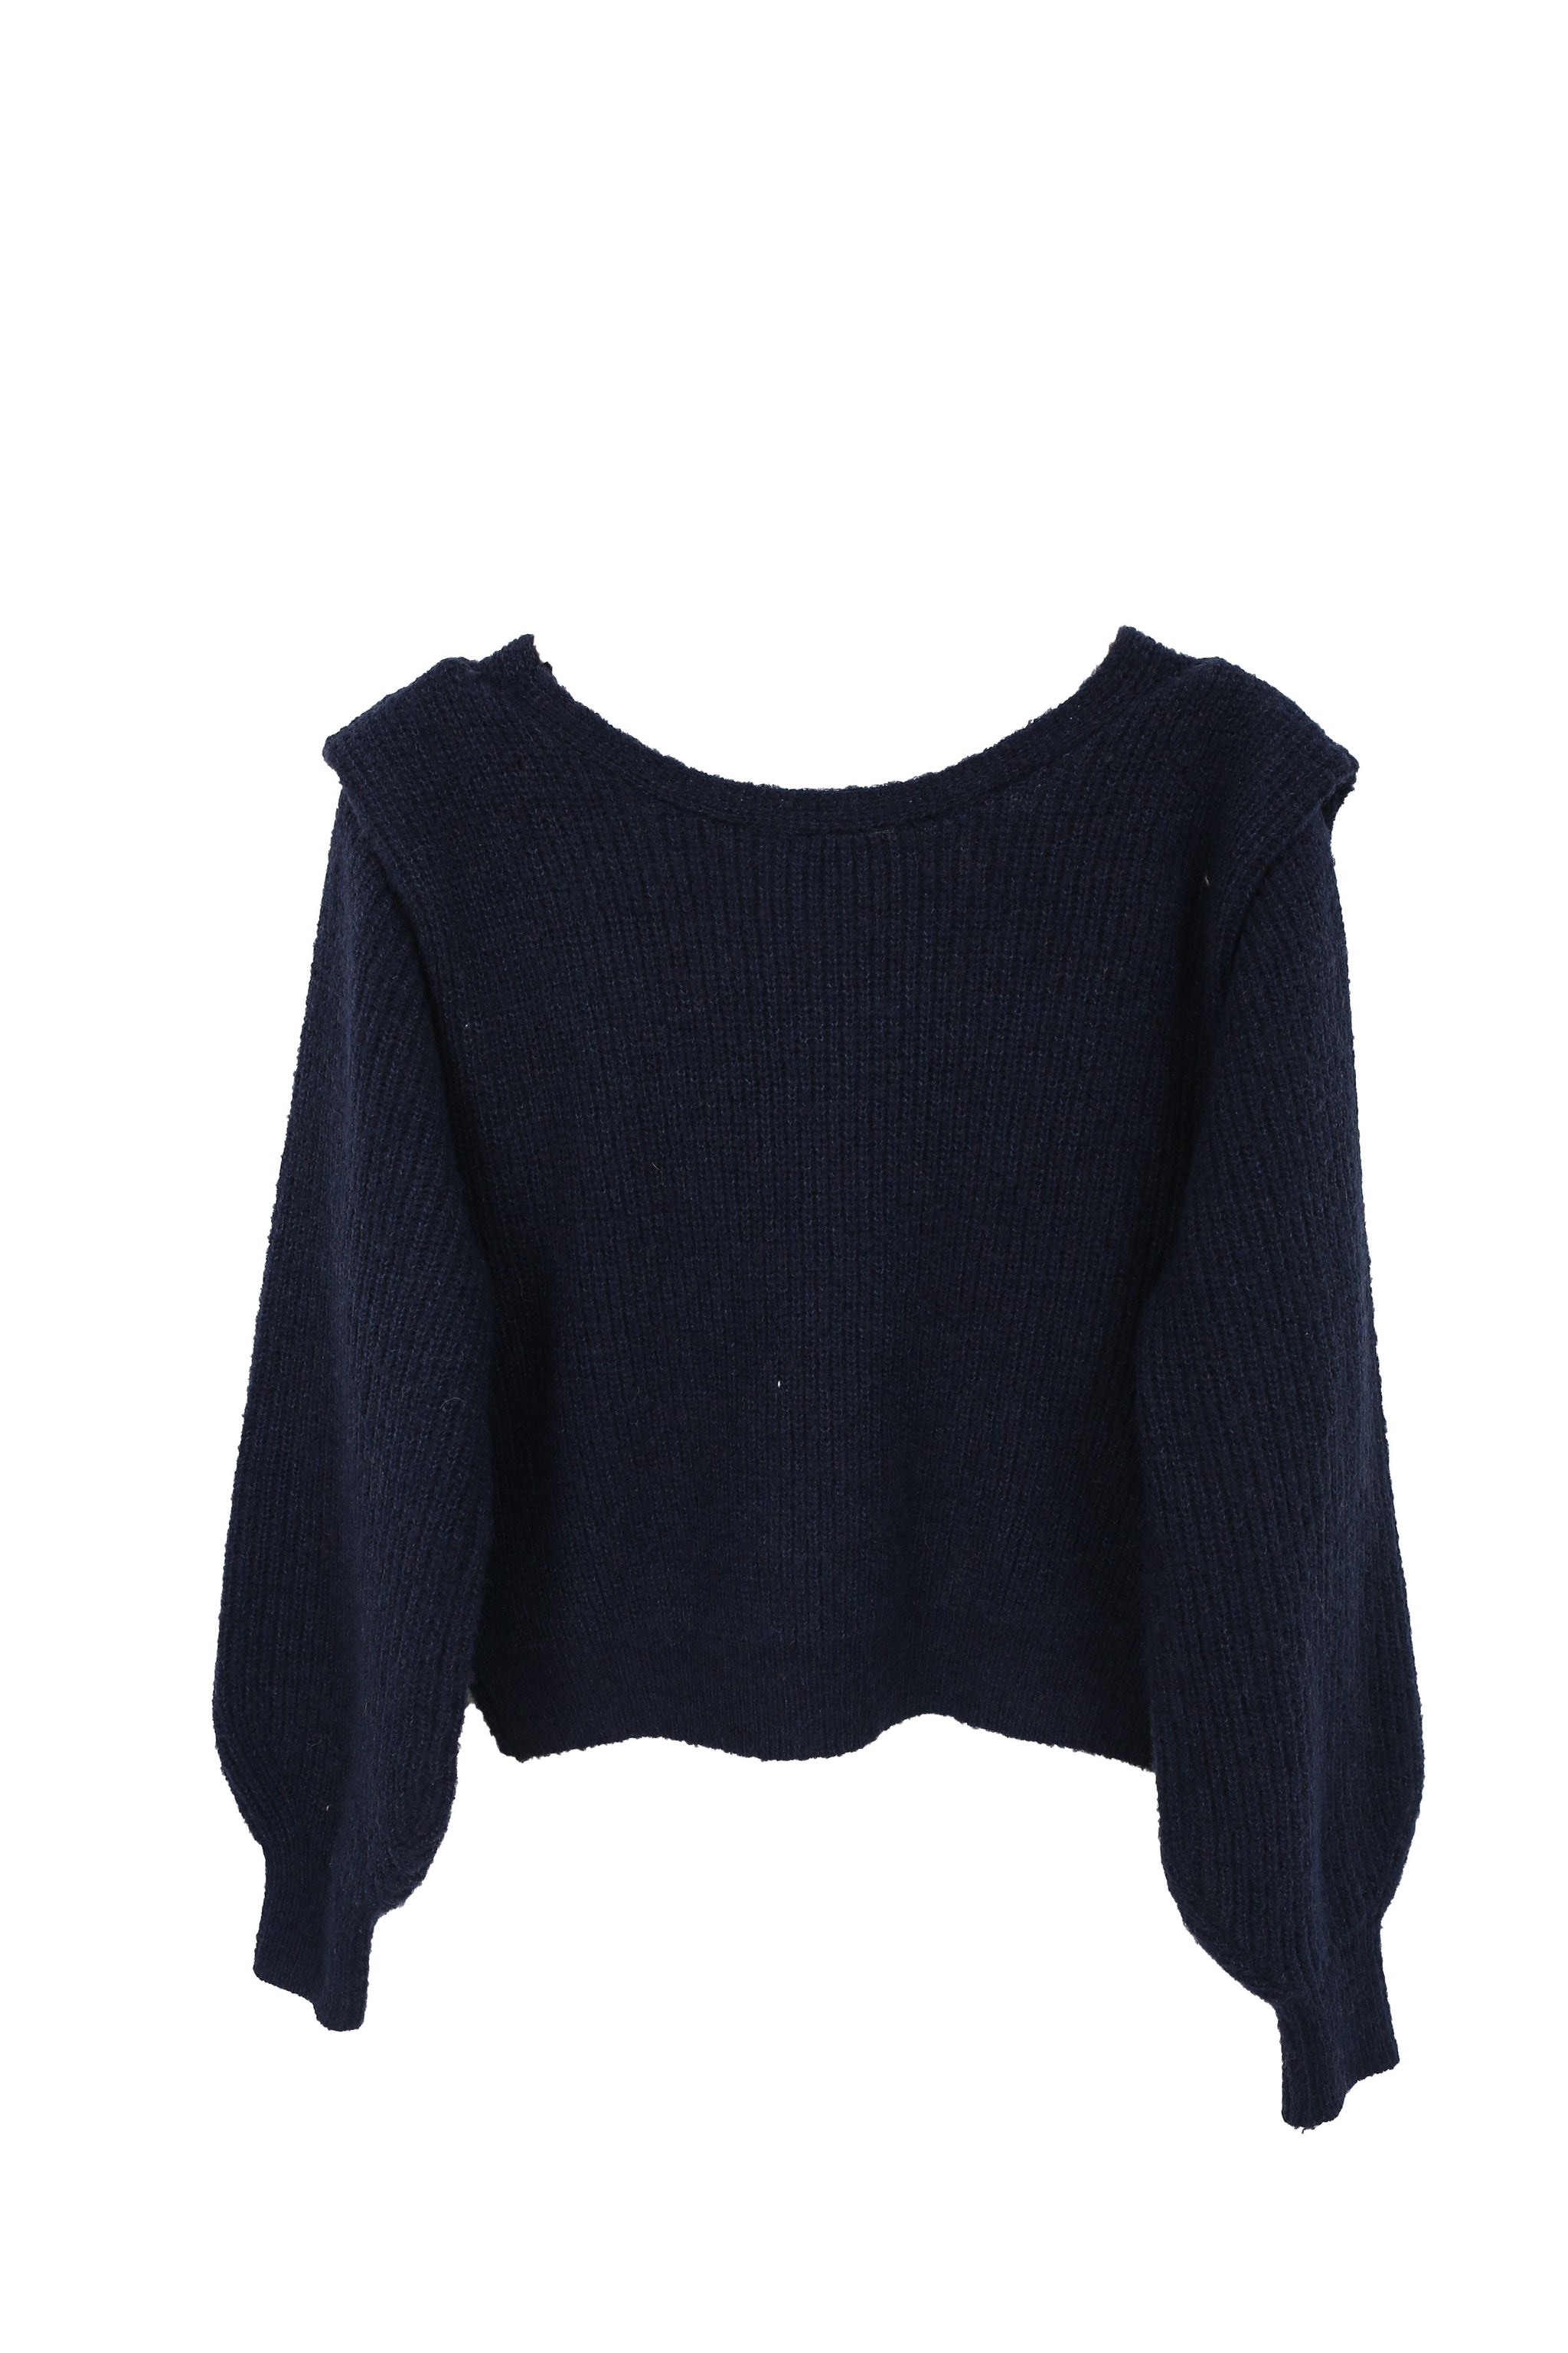 TheKorner Navy Blue V-Neck Sweater